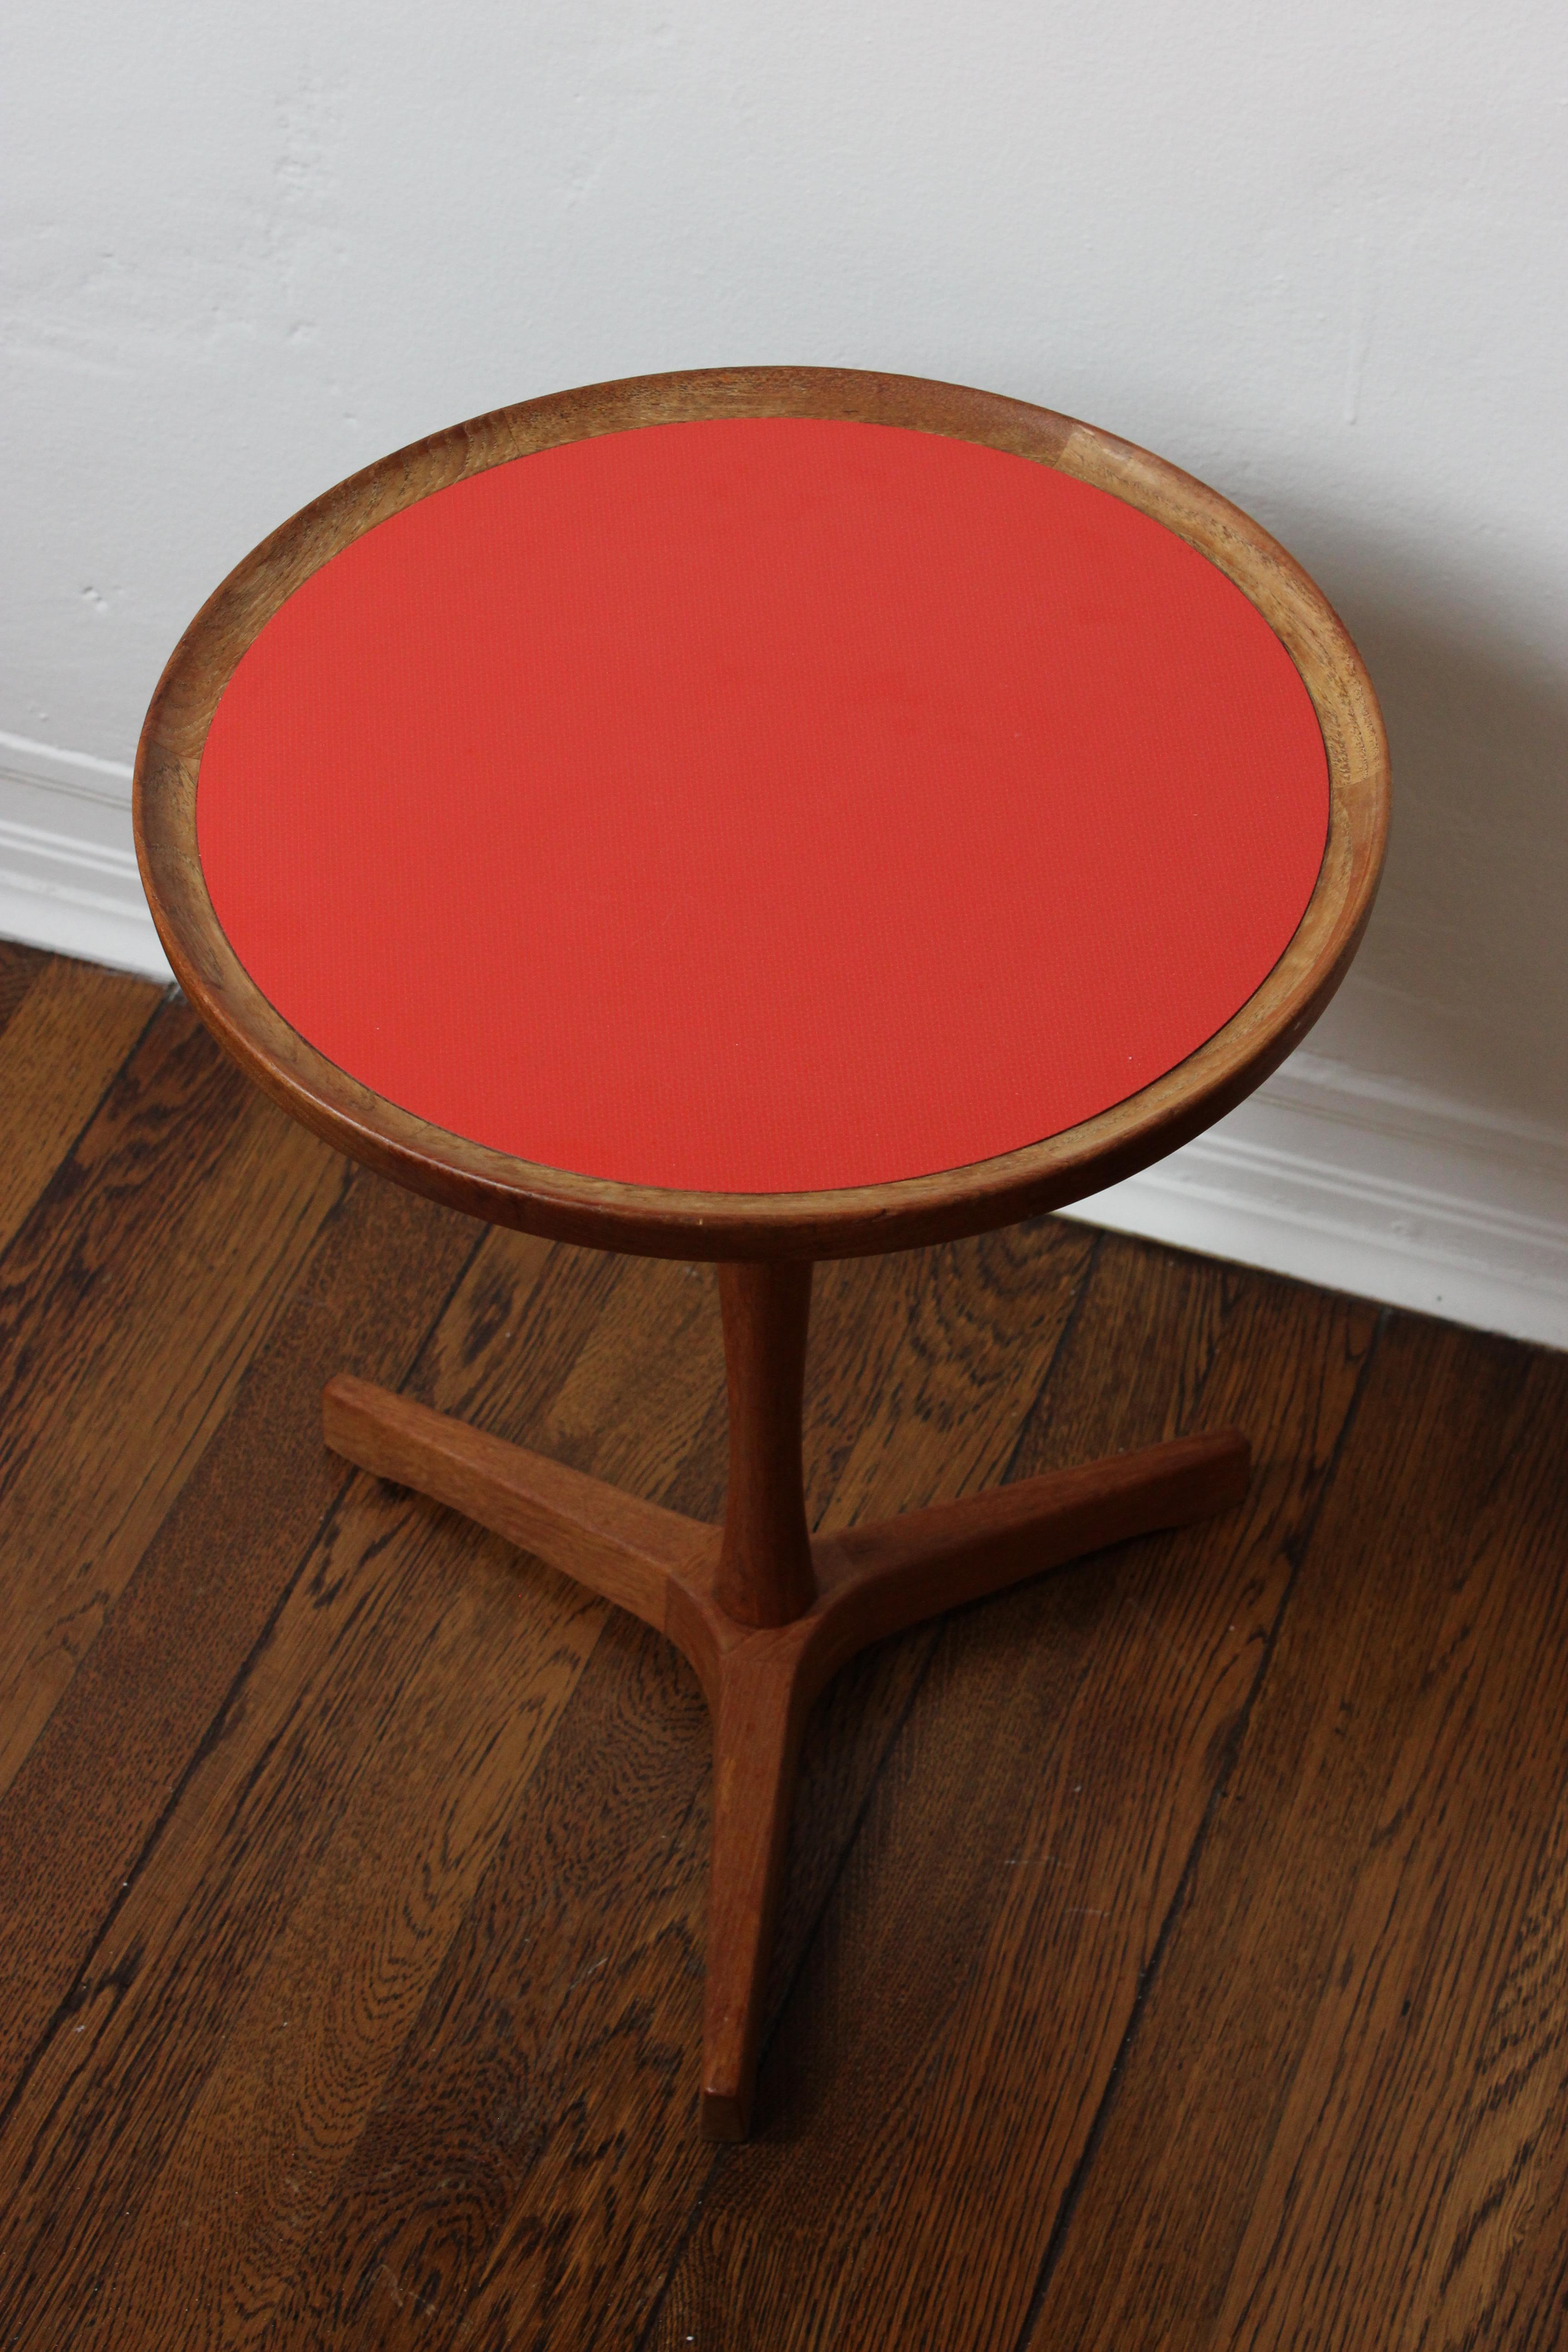 Ein sehr seltener Beistelltisch von Hans C. Andersen für Artex. Die orangefarbene Formica-Platte war auf vielen dieser Tische nicht zu sehen und ist nach wie vor die schwerste zu findende Version. 

Dänemark, 1960er Jahre 
Teakholz.

2x